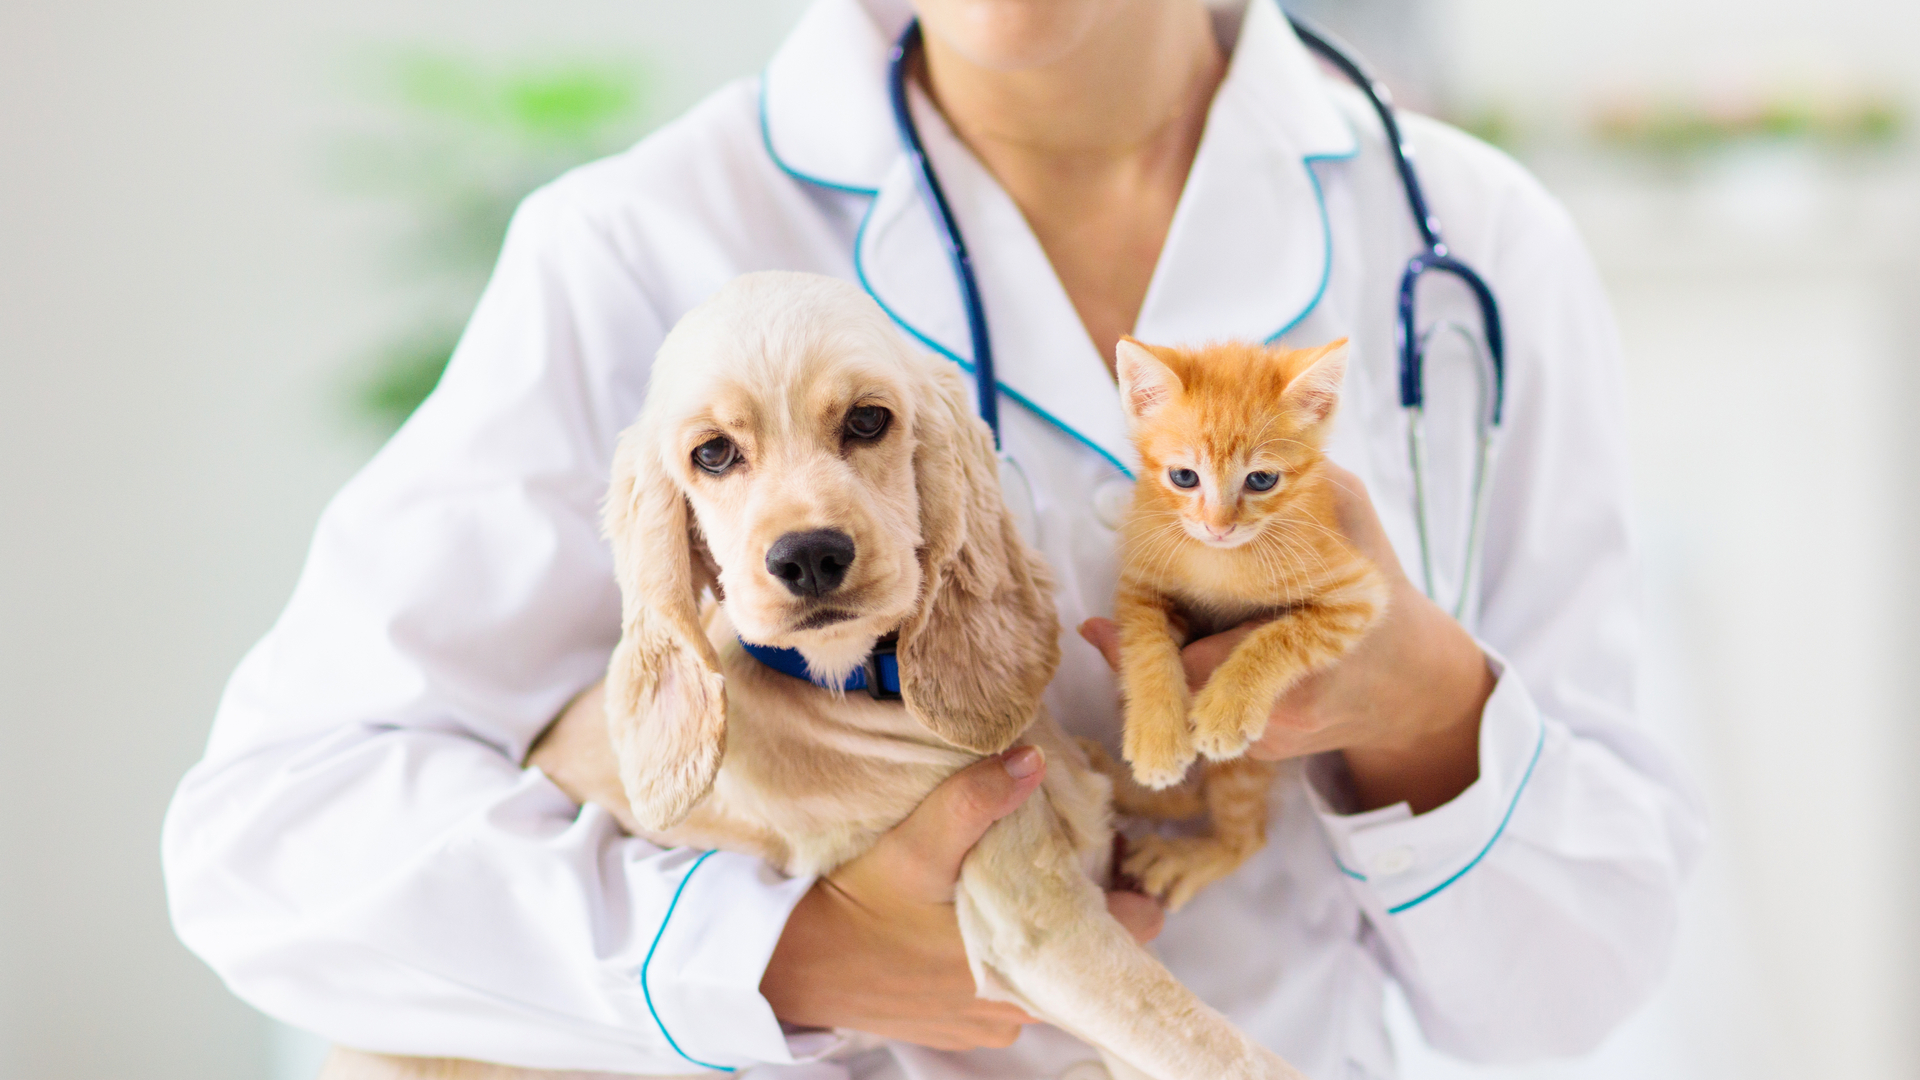 Consultas de rotina e check ups periódicos com o médico-veterinário são fundamentais para prevenir problemas de saúde, como verminoses. | Foto: Shutterstock